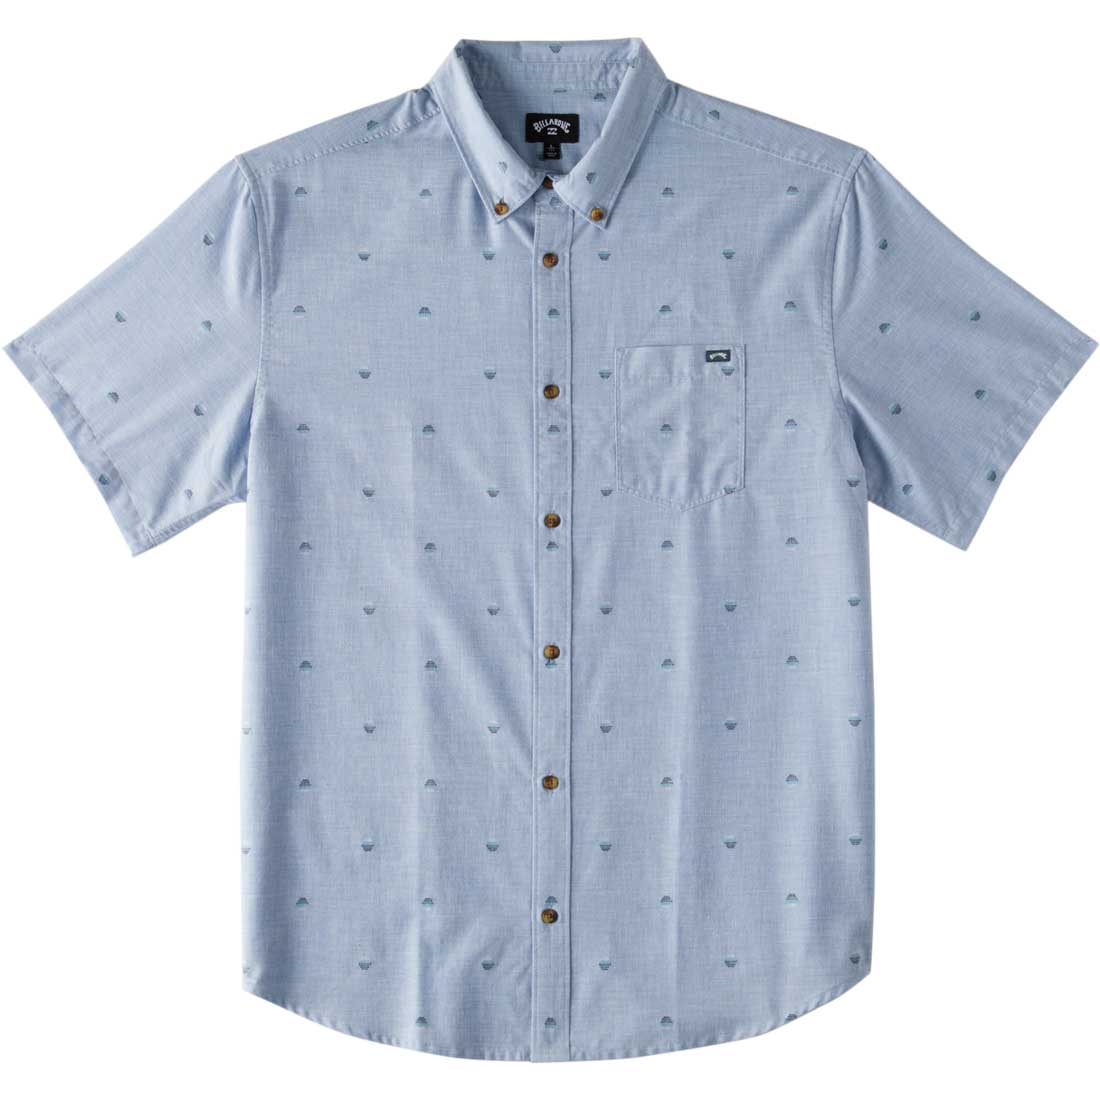 Billabong All Day Jacquard Short Sleeve Shirt - Men's